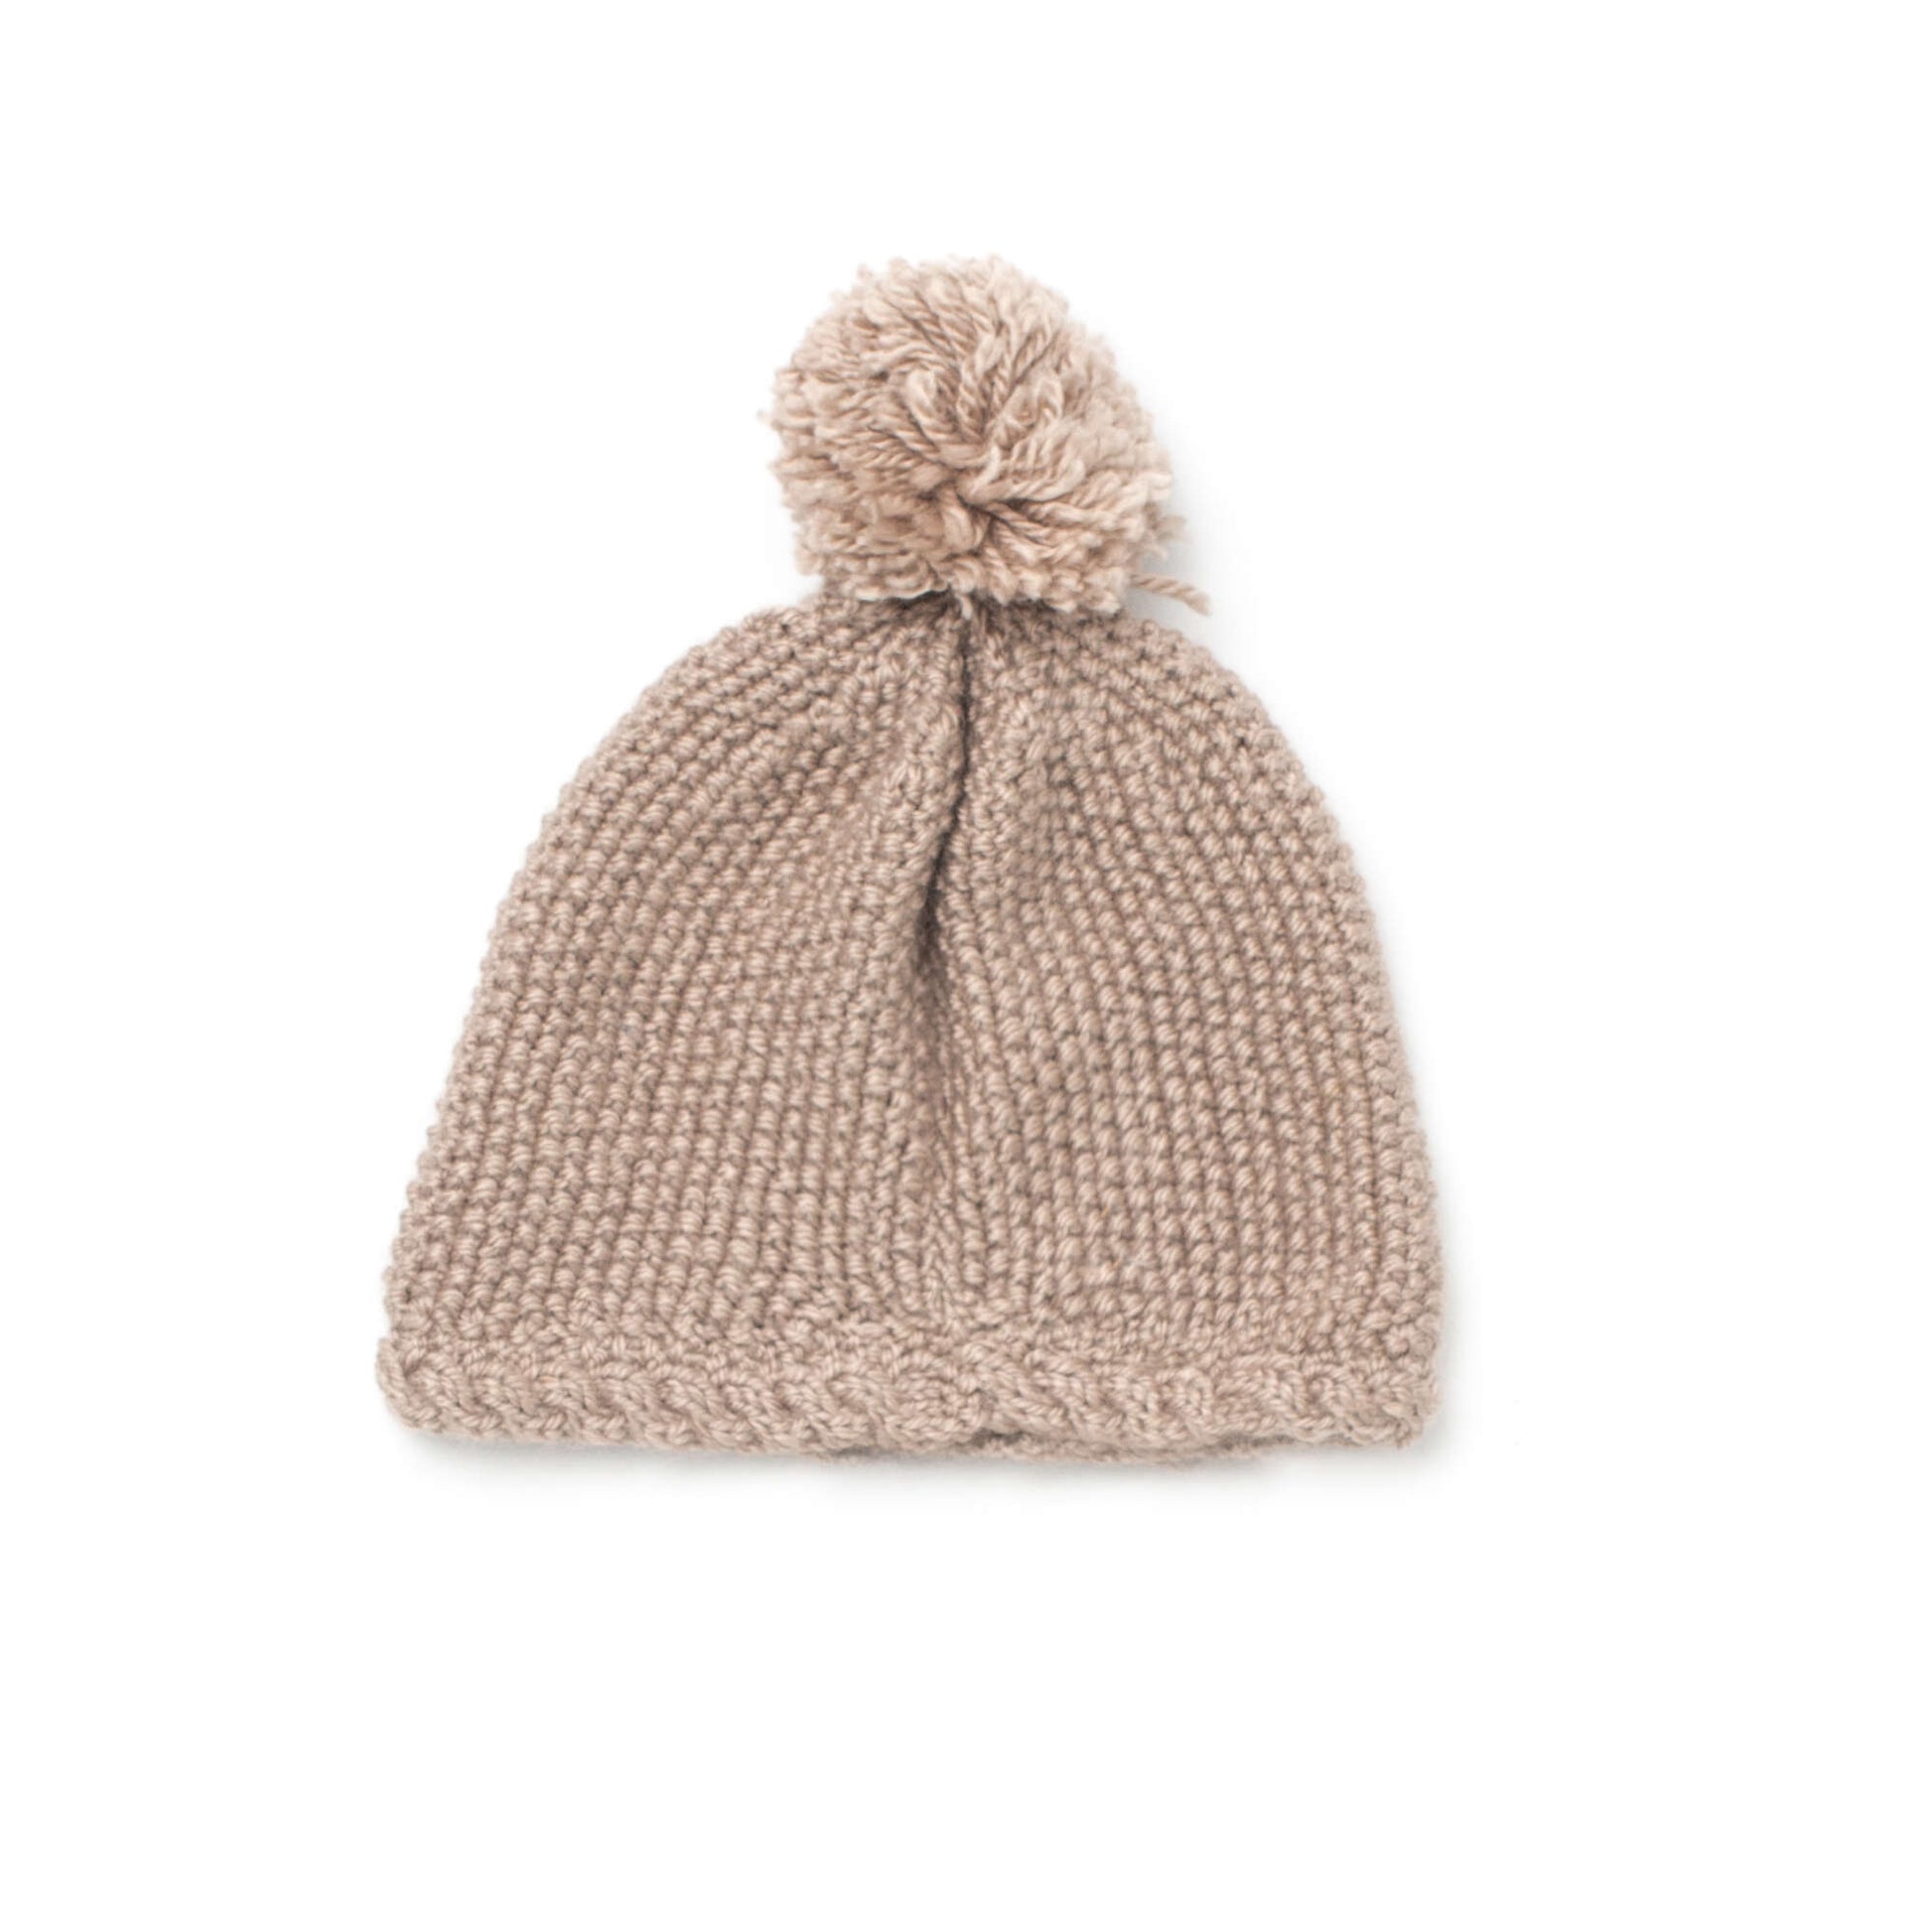 Bernat Hat For Little Ears Knit Hat made in Bernat Softee Baby yarn